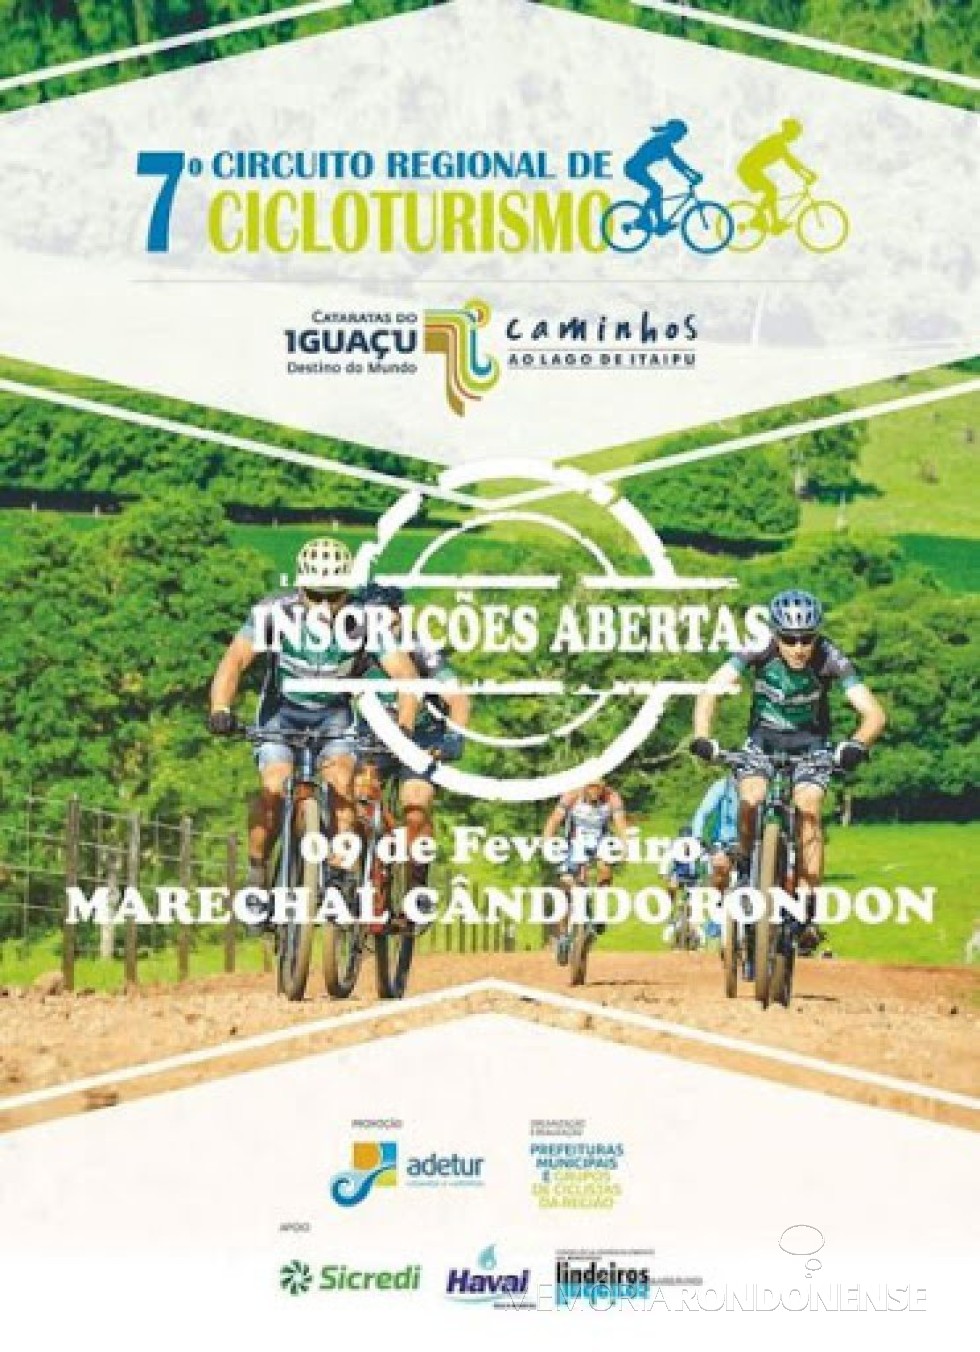 || Cartaz convite para a etapa de Marechal Cândido Rondon do Cicloturismo Regional 2020, em fevereiro do citado ano.
Imagem: Acervo Adetur - FOTO 11 - 